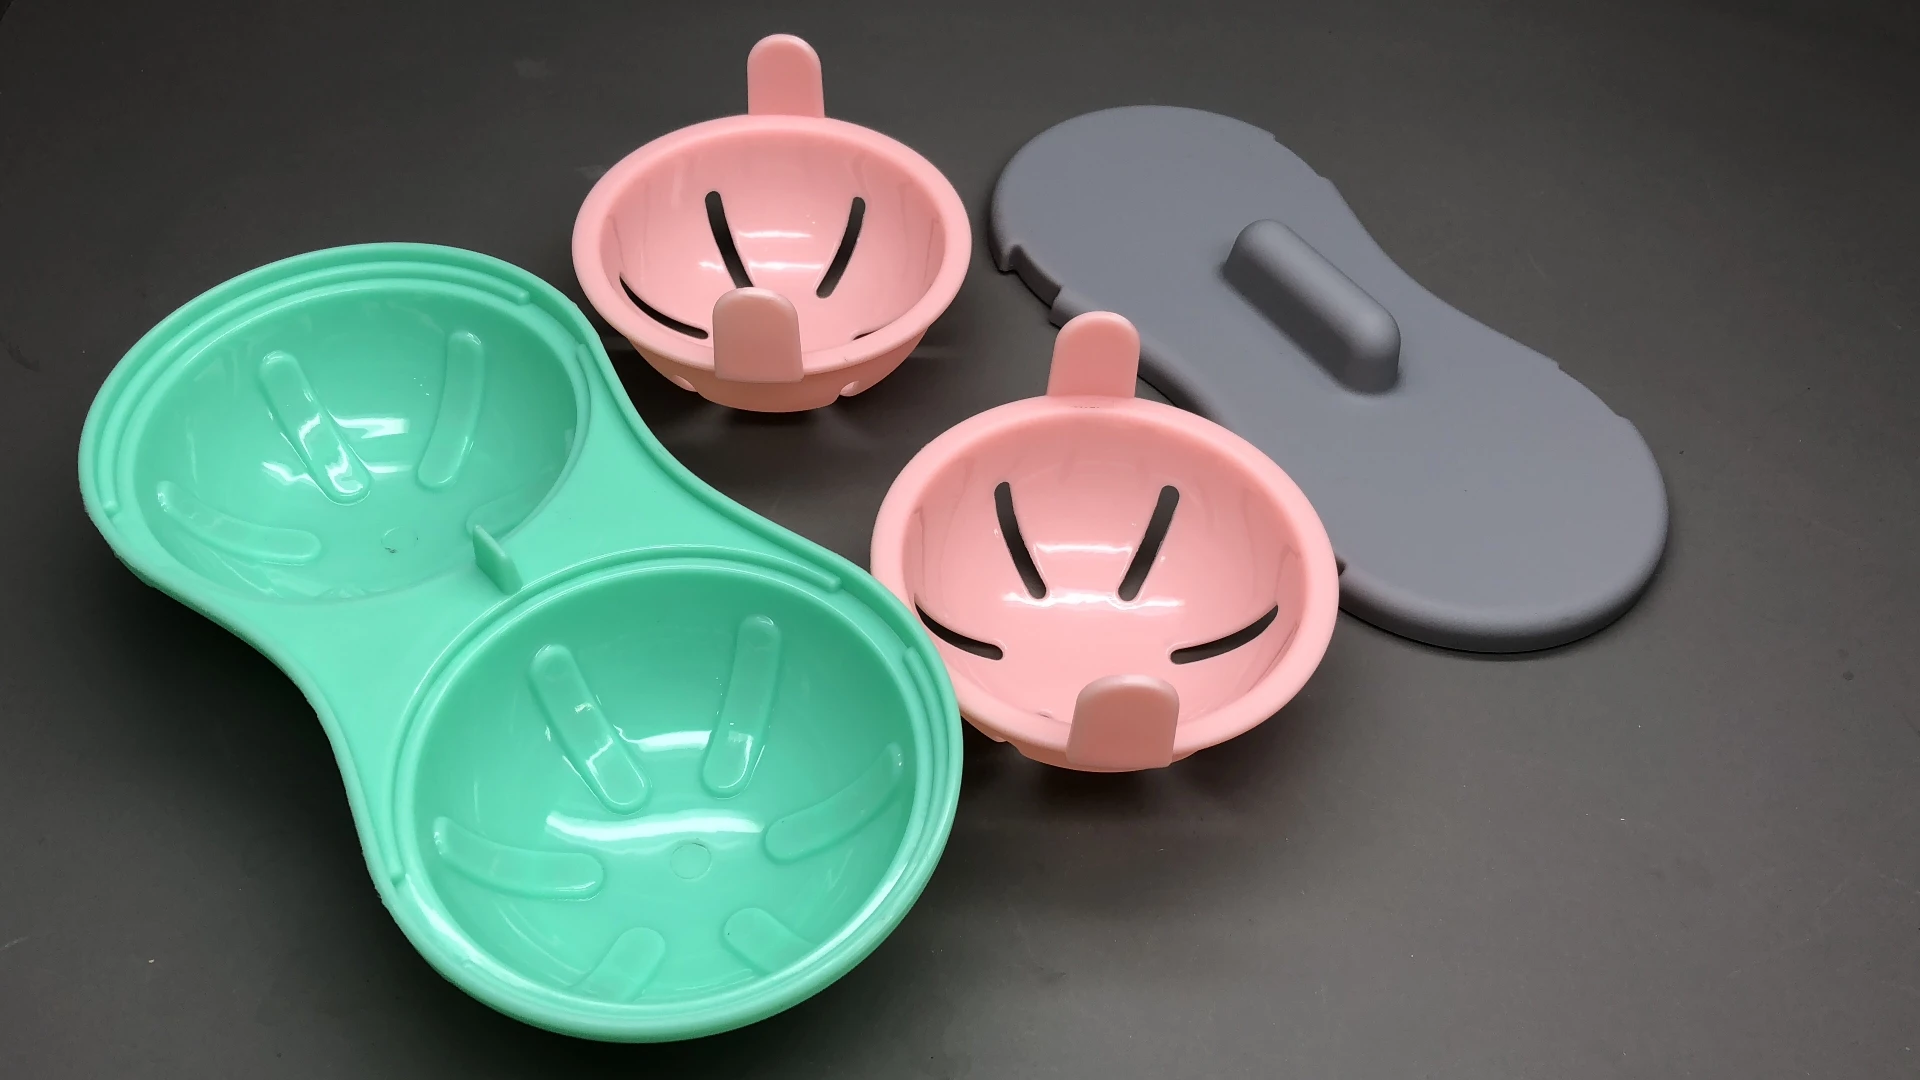 
kitchen gadget double cups design microwave egg poacher 